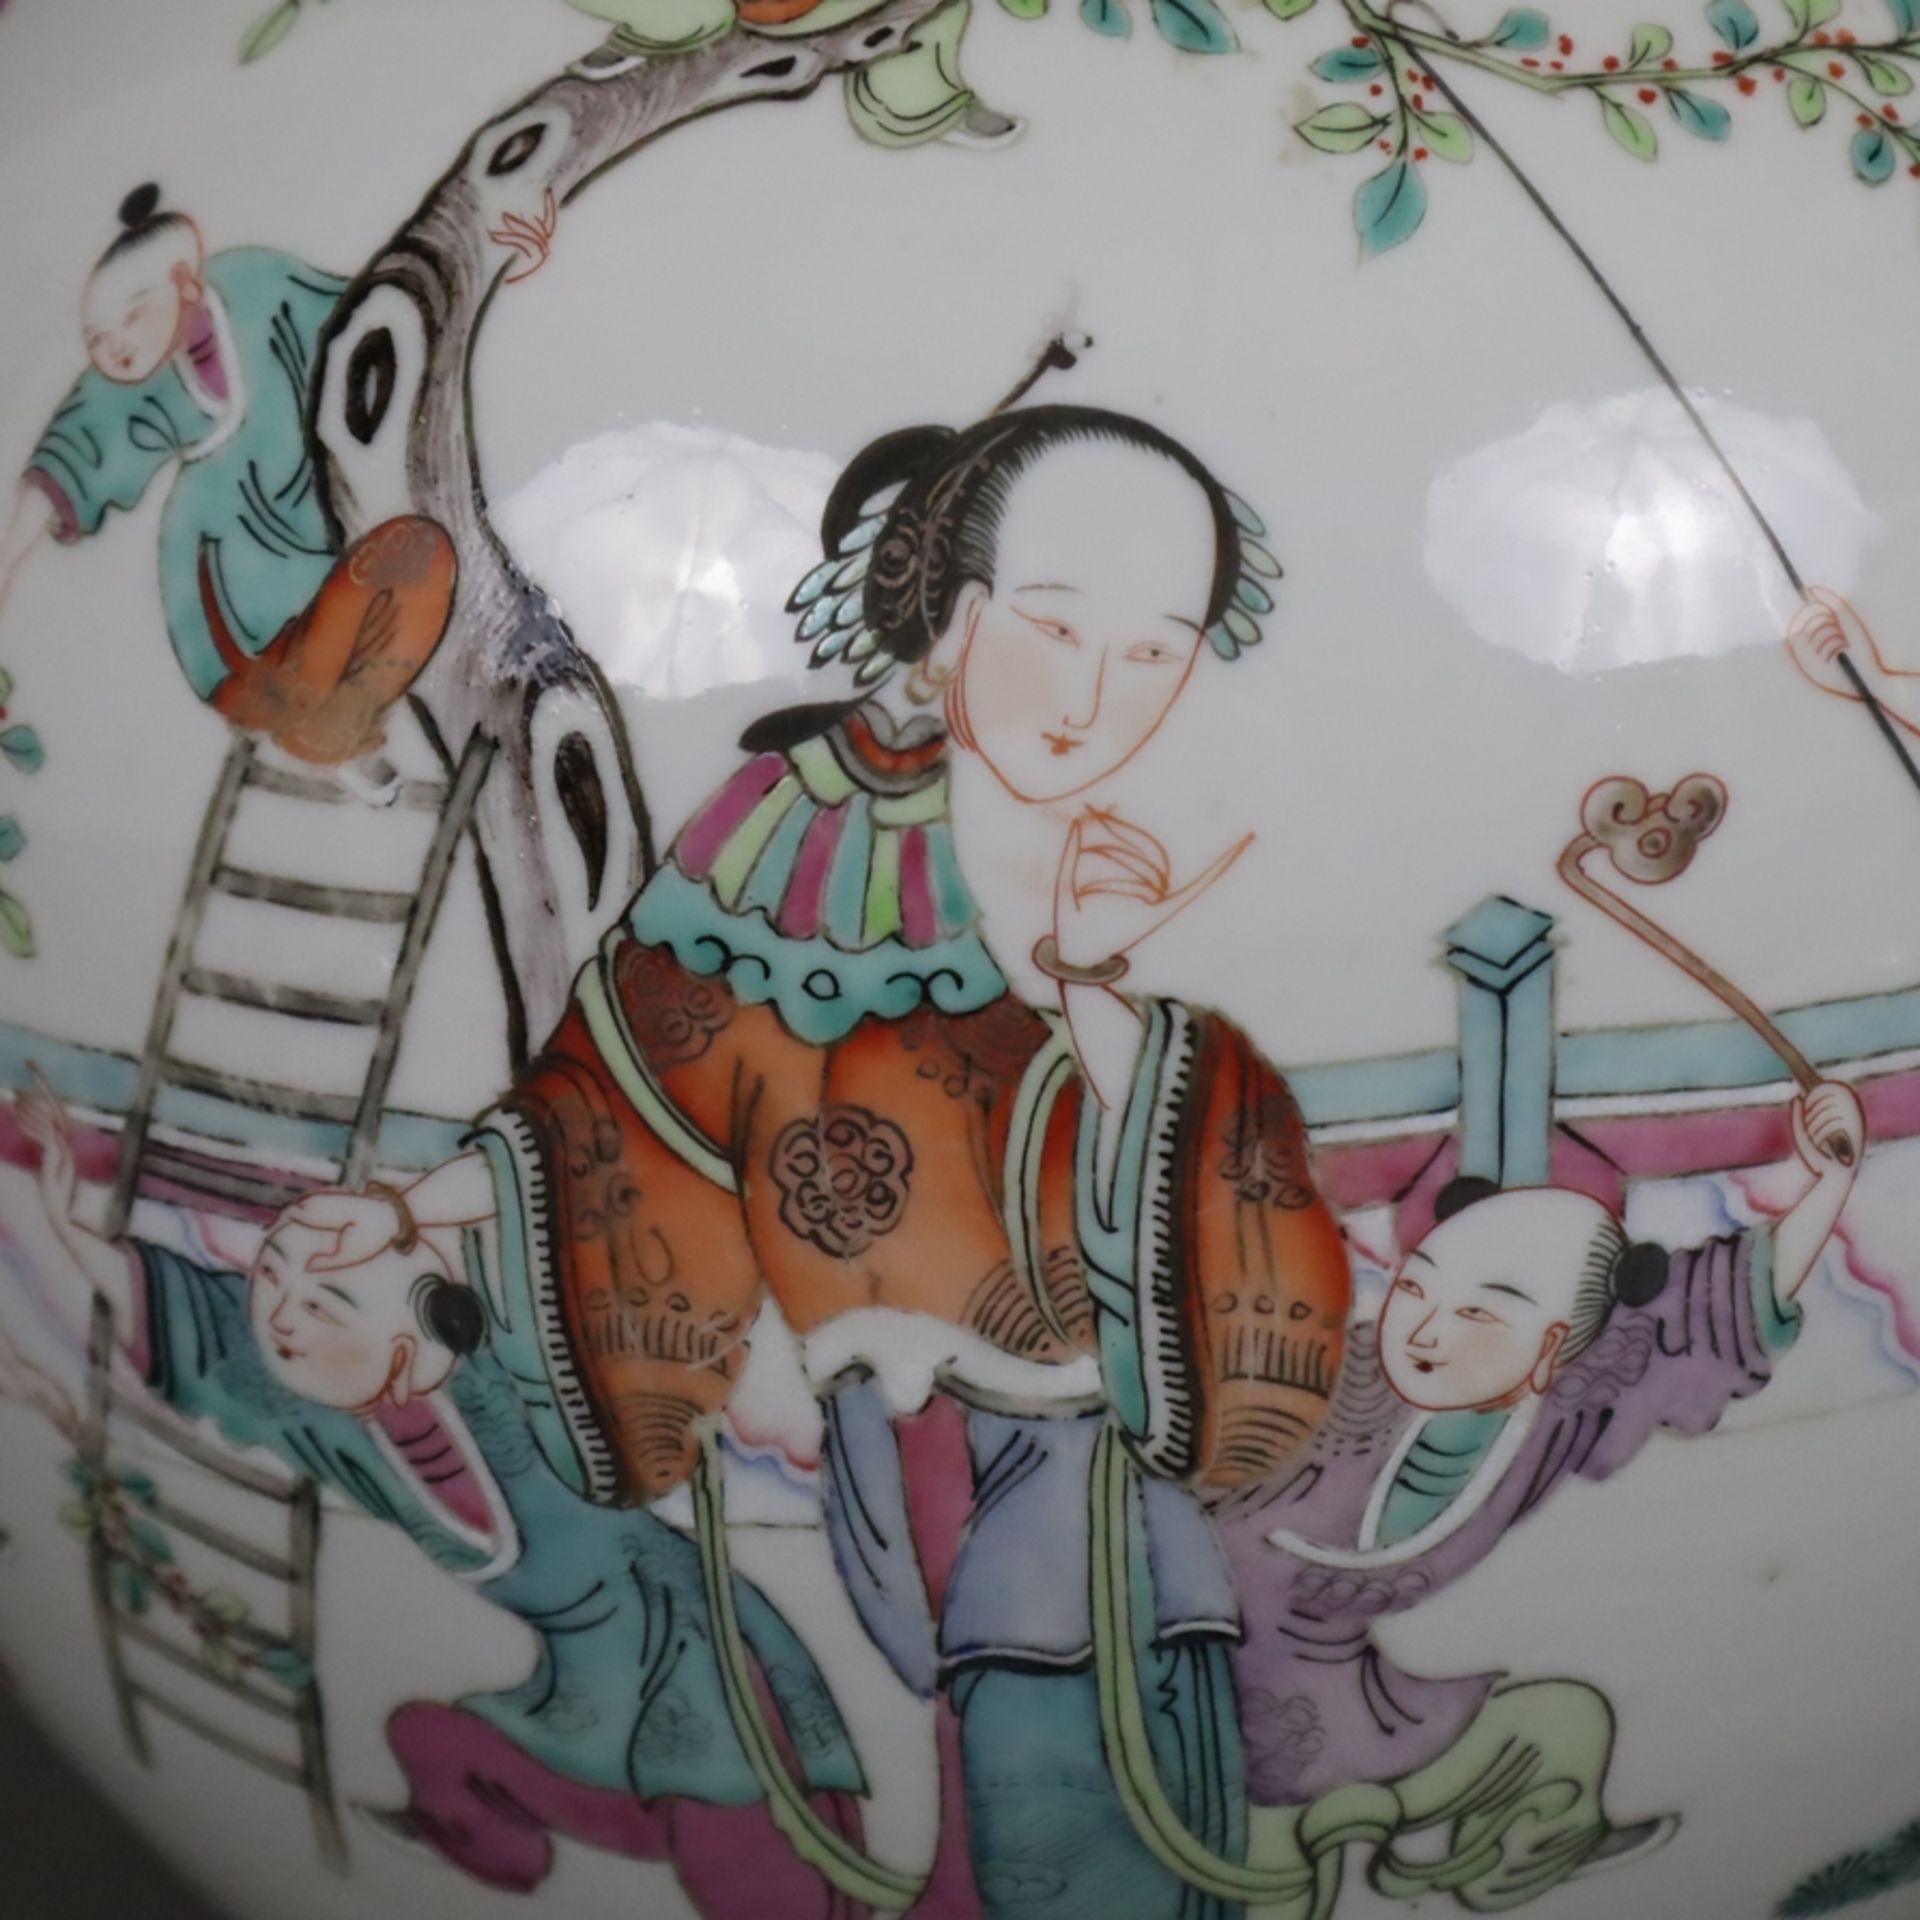 Porzellan-Deckeltopf - China, kugeliger Korpus mit Steckdeckel, auf der Wandung mehrfigurige szenis - Image 6 of 15